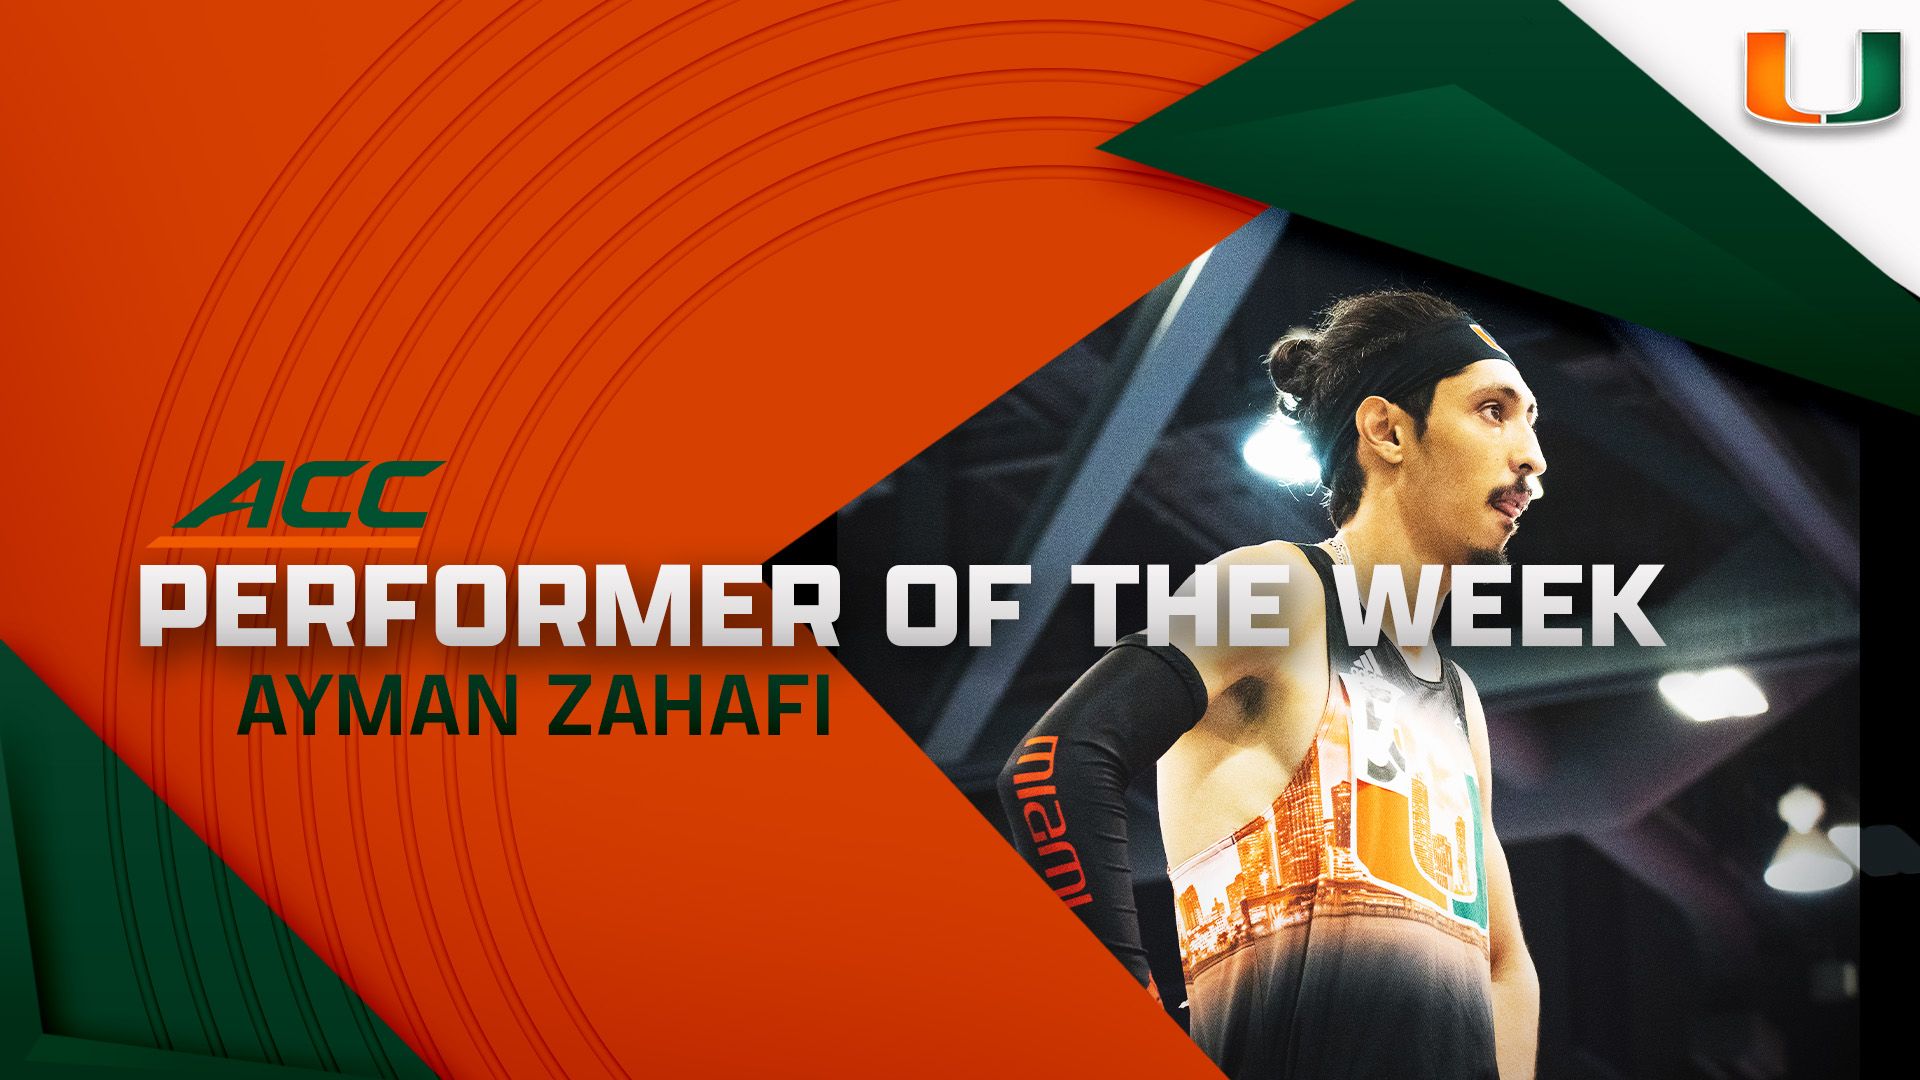 Zahafi Tabbed ACC Performer of the Week